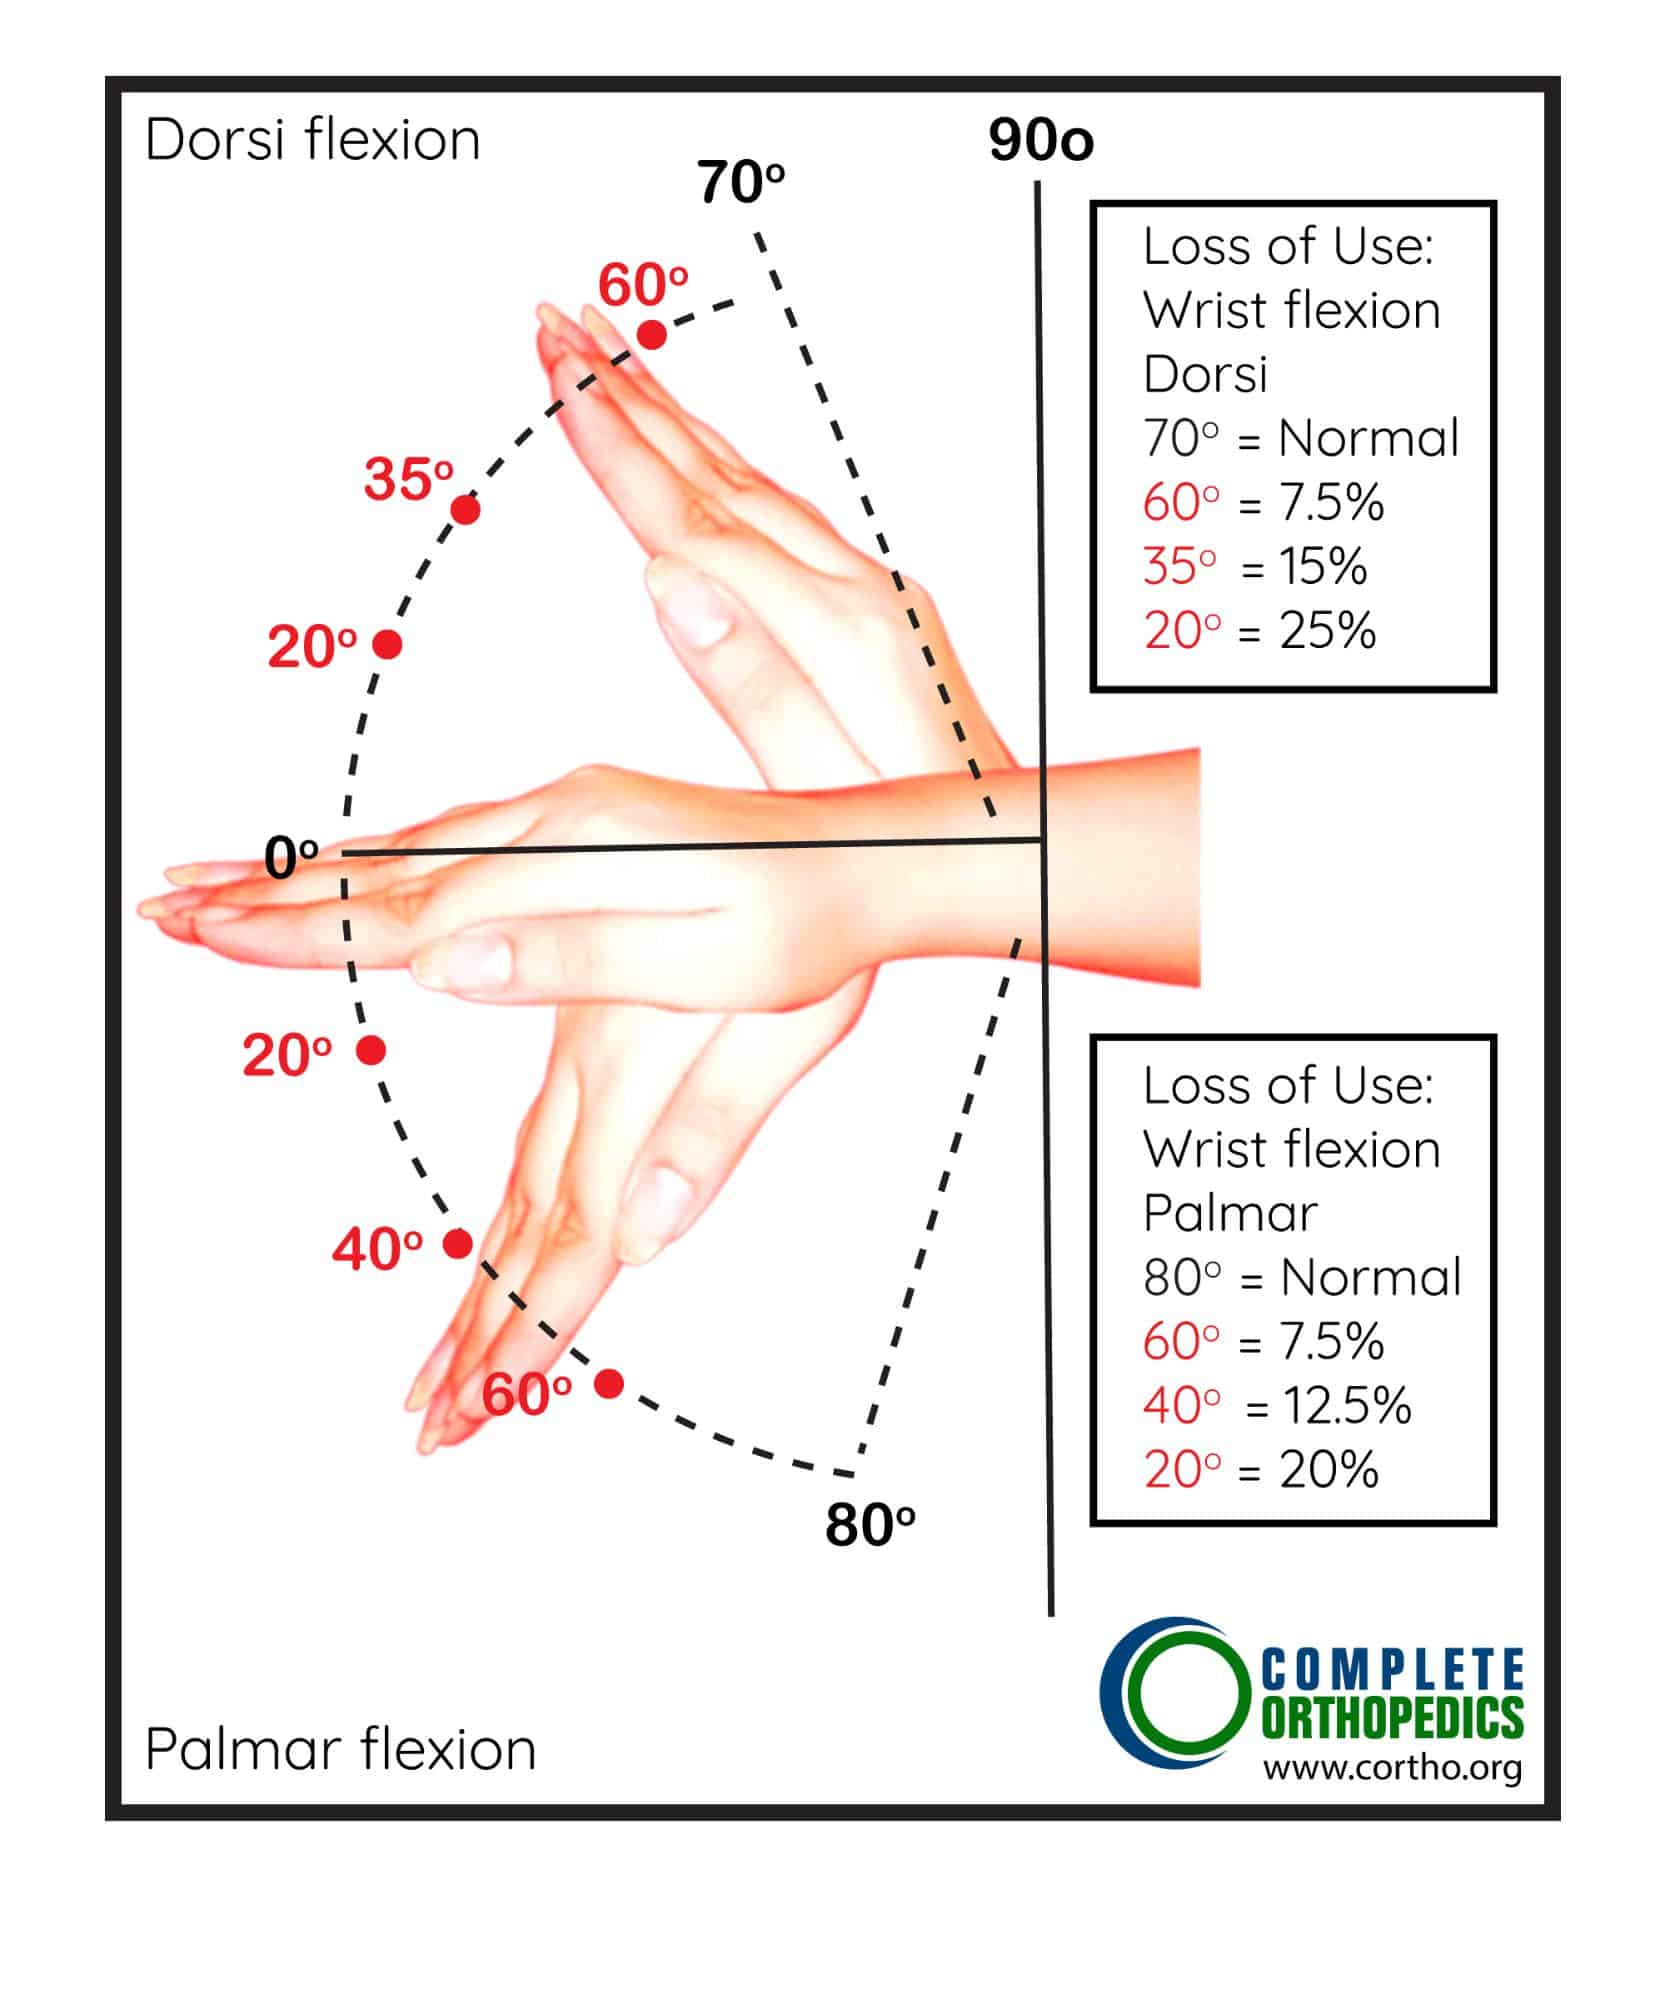 Figura: Flexión dorsal y flexión palmar de la muñeca: Determinación del porcentaje de pérdida de uso de la mano